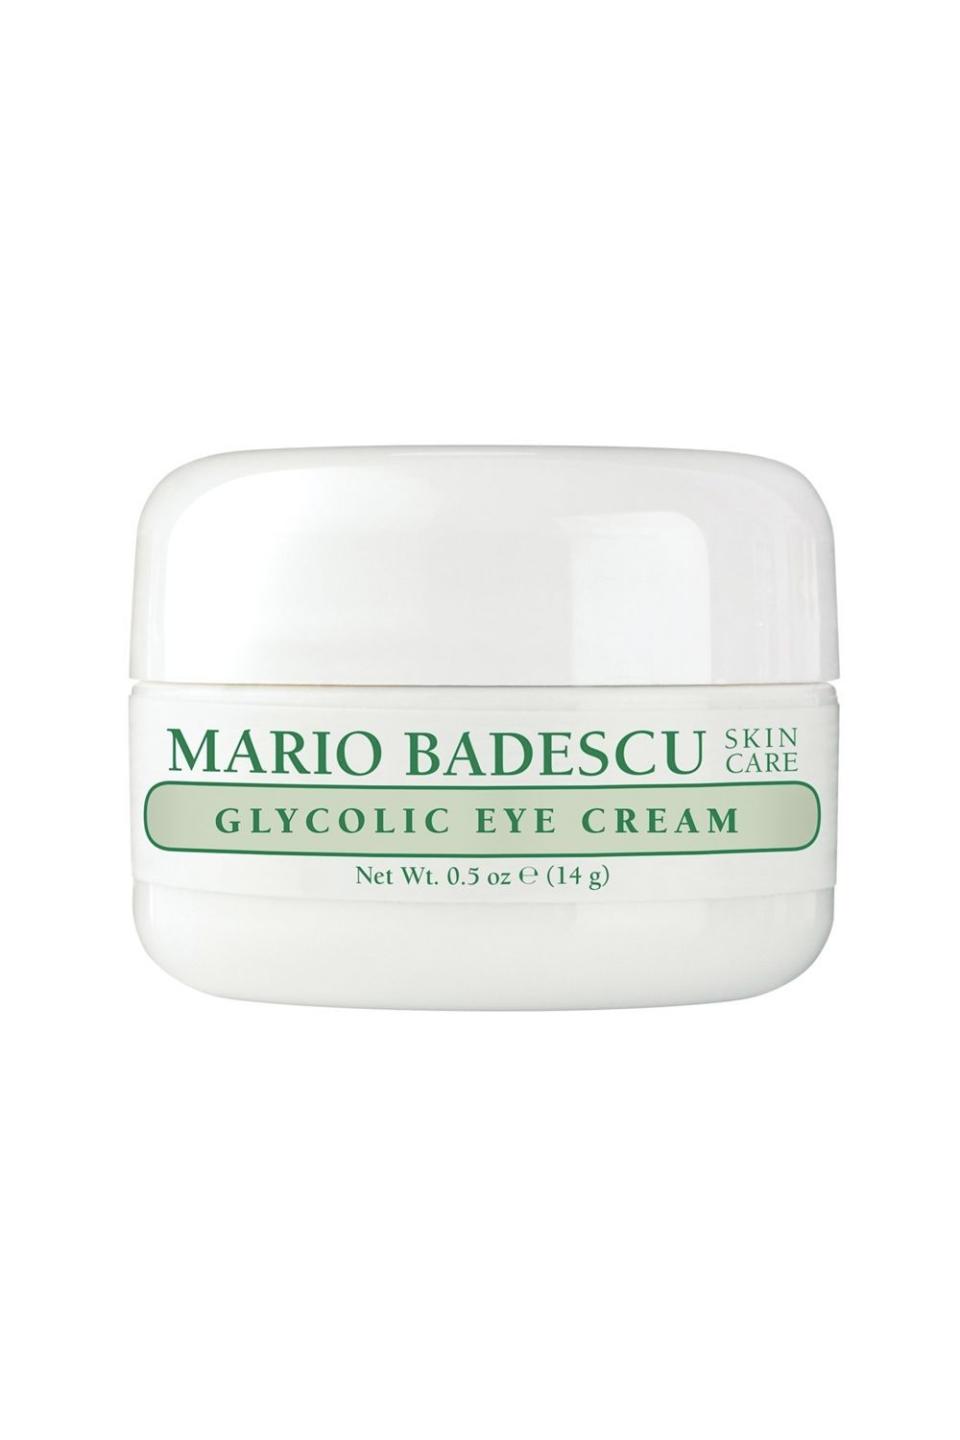 20) Mario Badescu Glycolic Eye Cream